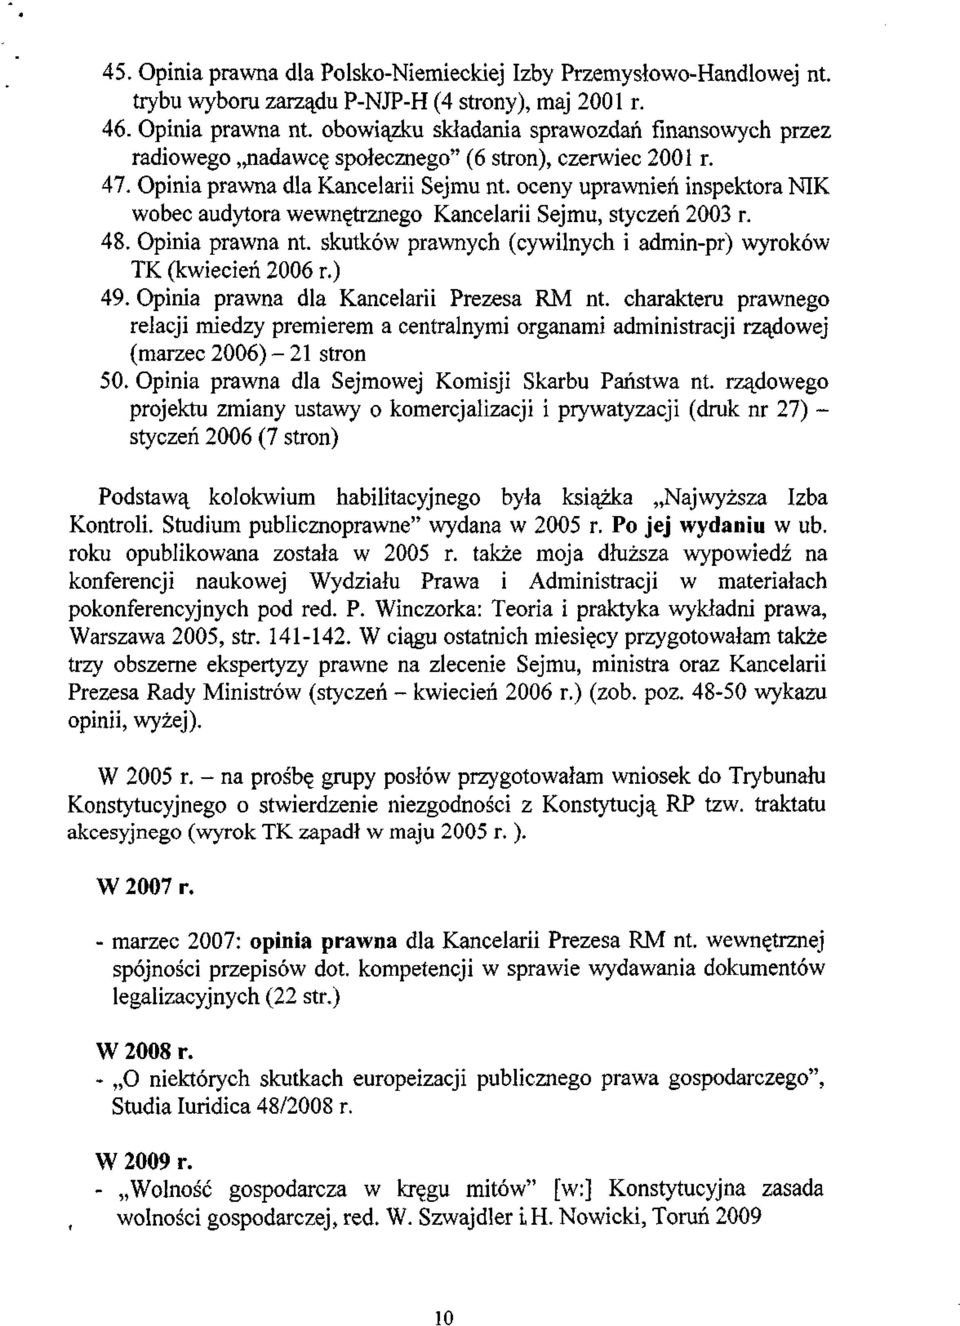 oceny uprawnień inspektora NIK wobec audytora wewnętrznego Kancelarii Sejmu, styczeń 2003 r. 48. Opinia prawna nt. skutków prawnych (cywilnych i admin-pr) wyroków TK (kwiecień 2006 r.) 49.